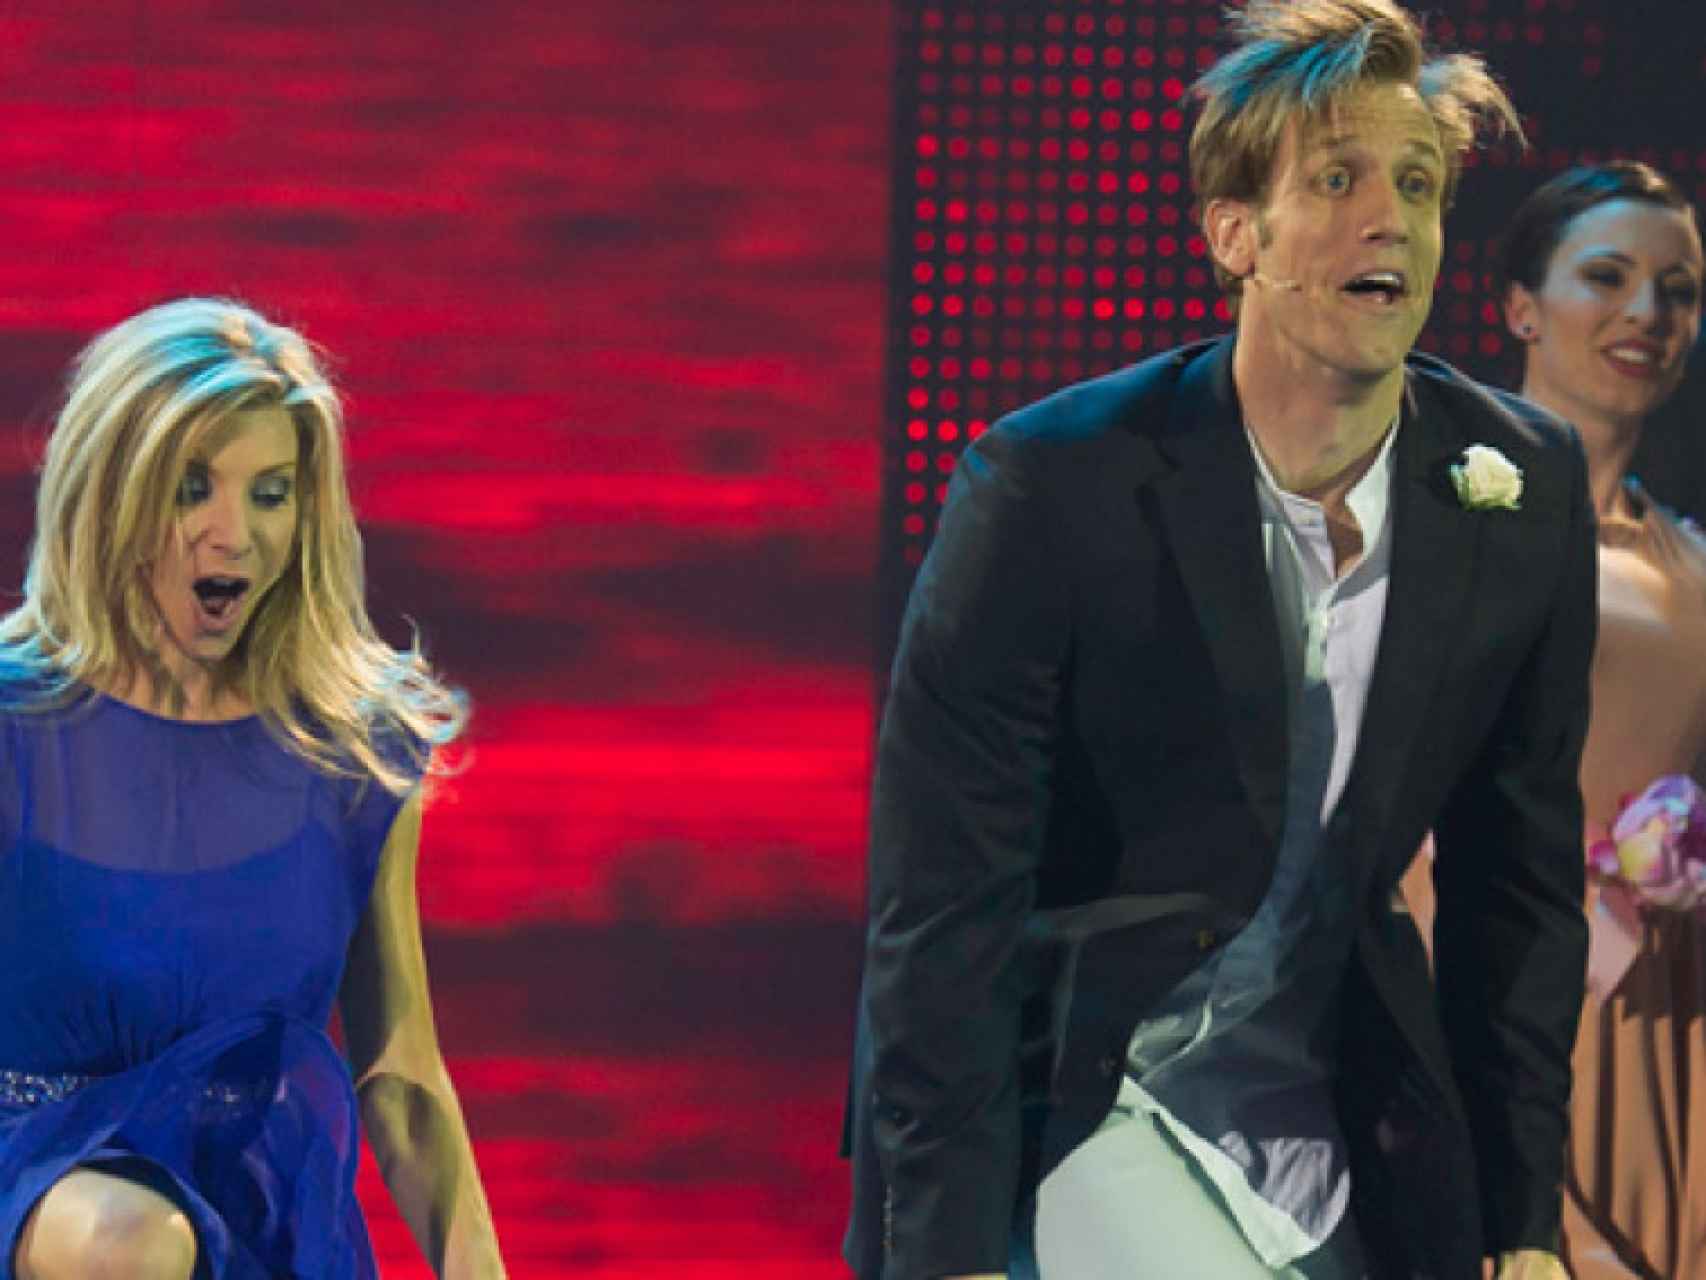 Eva Armenteros y Óscar Martínez bailando 'Marry you' de Bruno Mars en '¡A bailar!' de Antena 3.